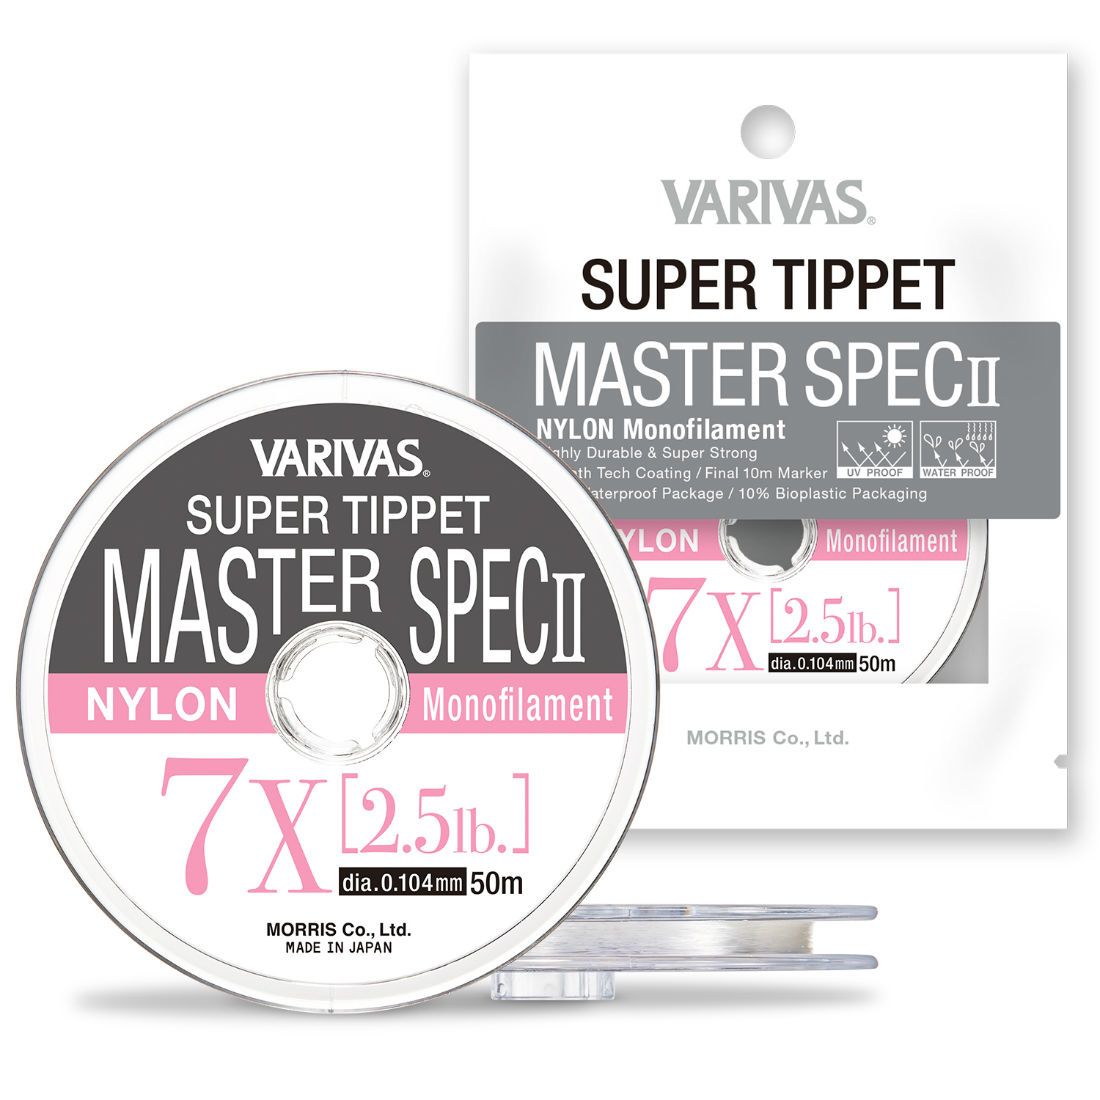 FIR SUPER TIPPET MASTER SPEC ll NYLON 7.5X 50m 0.098mm 2.0lb